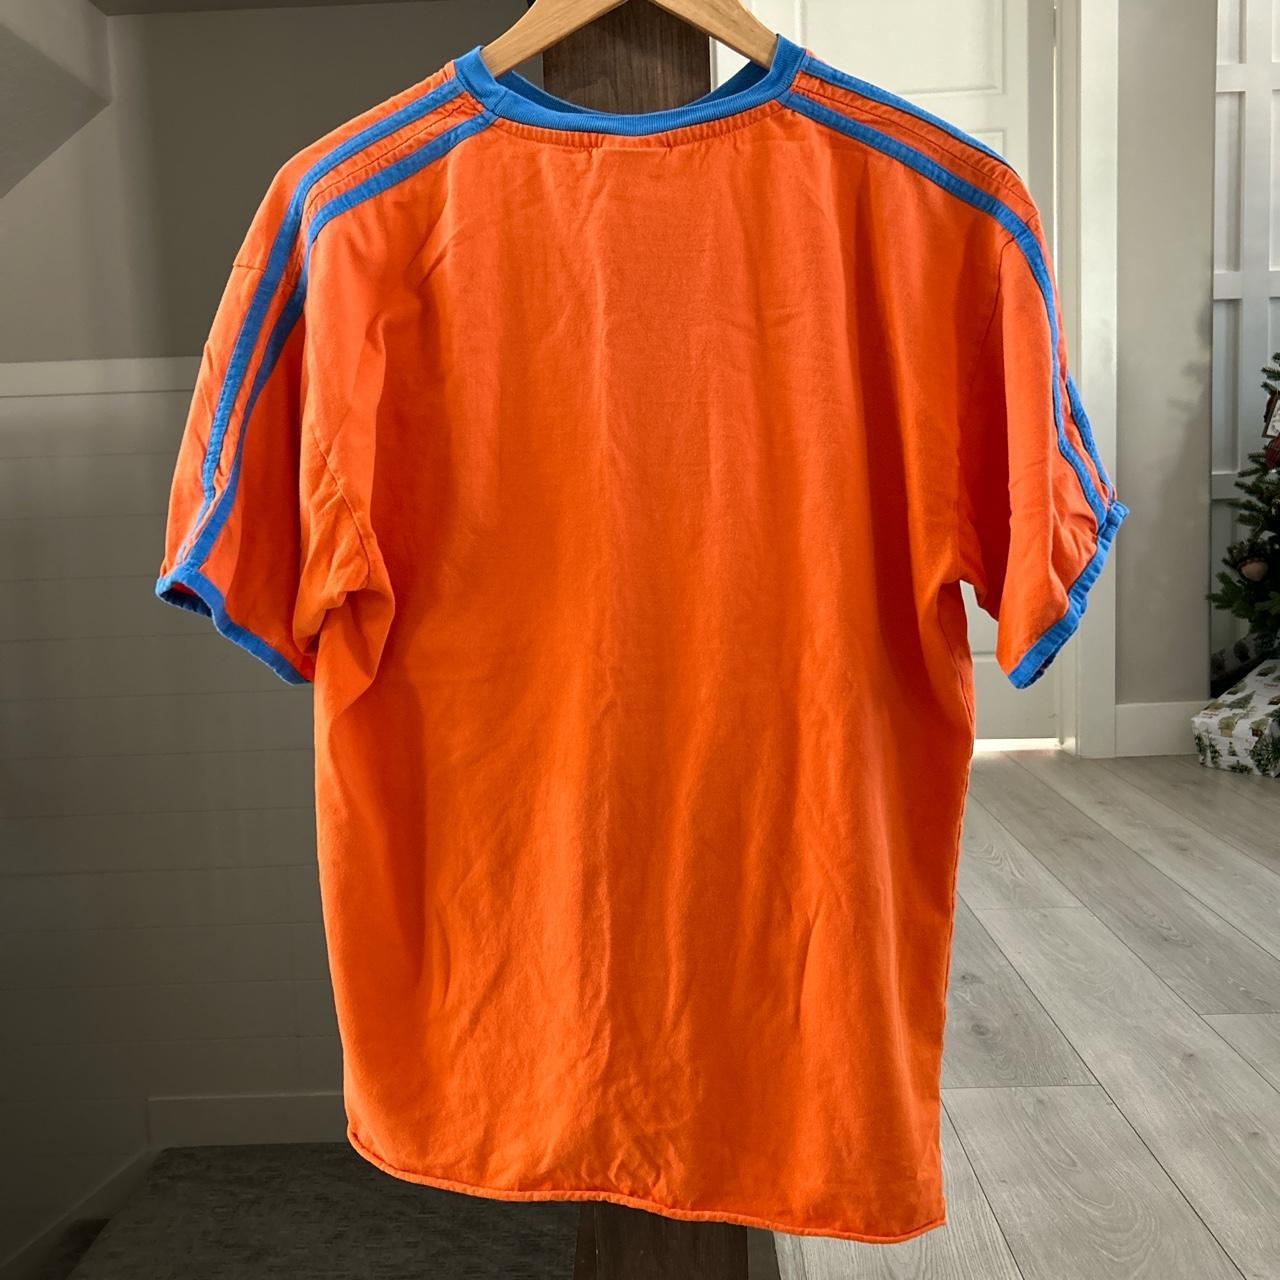 Vintage holland t shirt Size L Netherlands - Depop